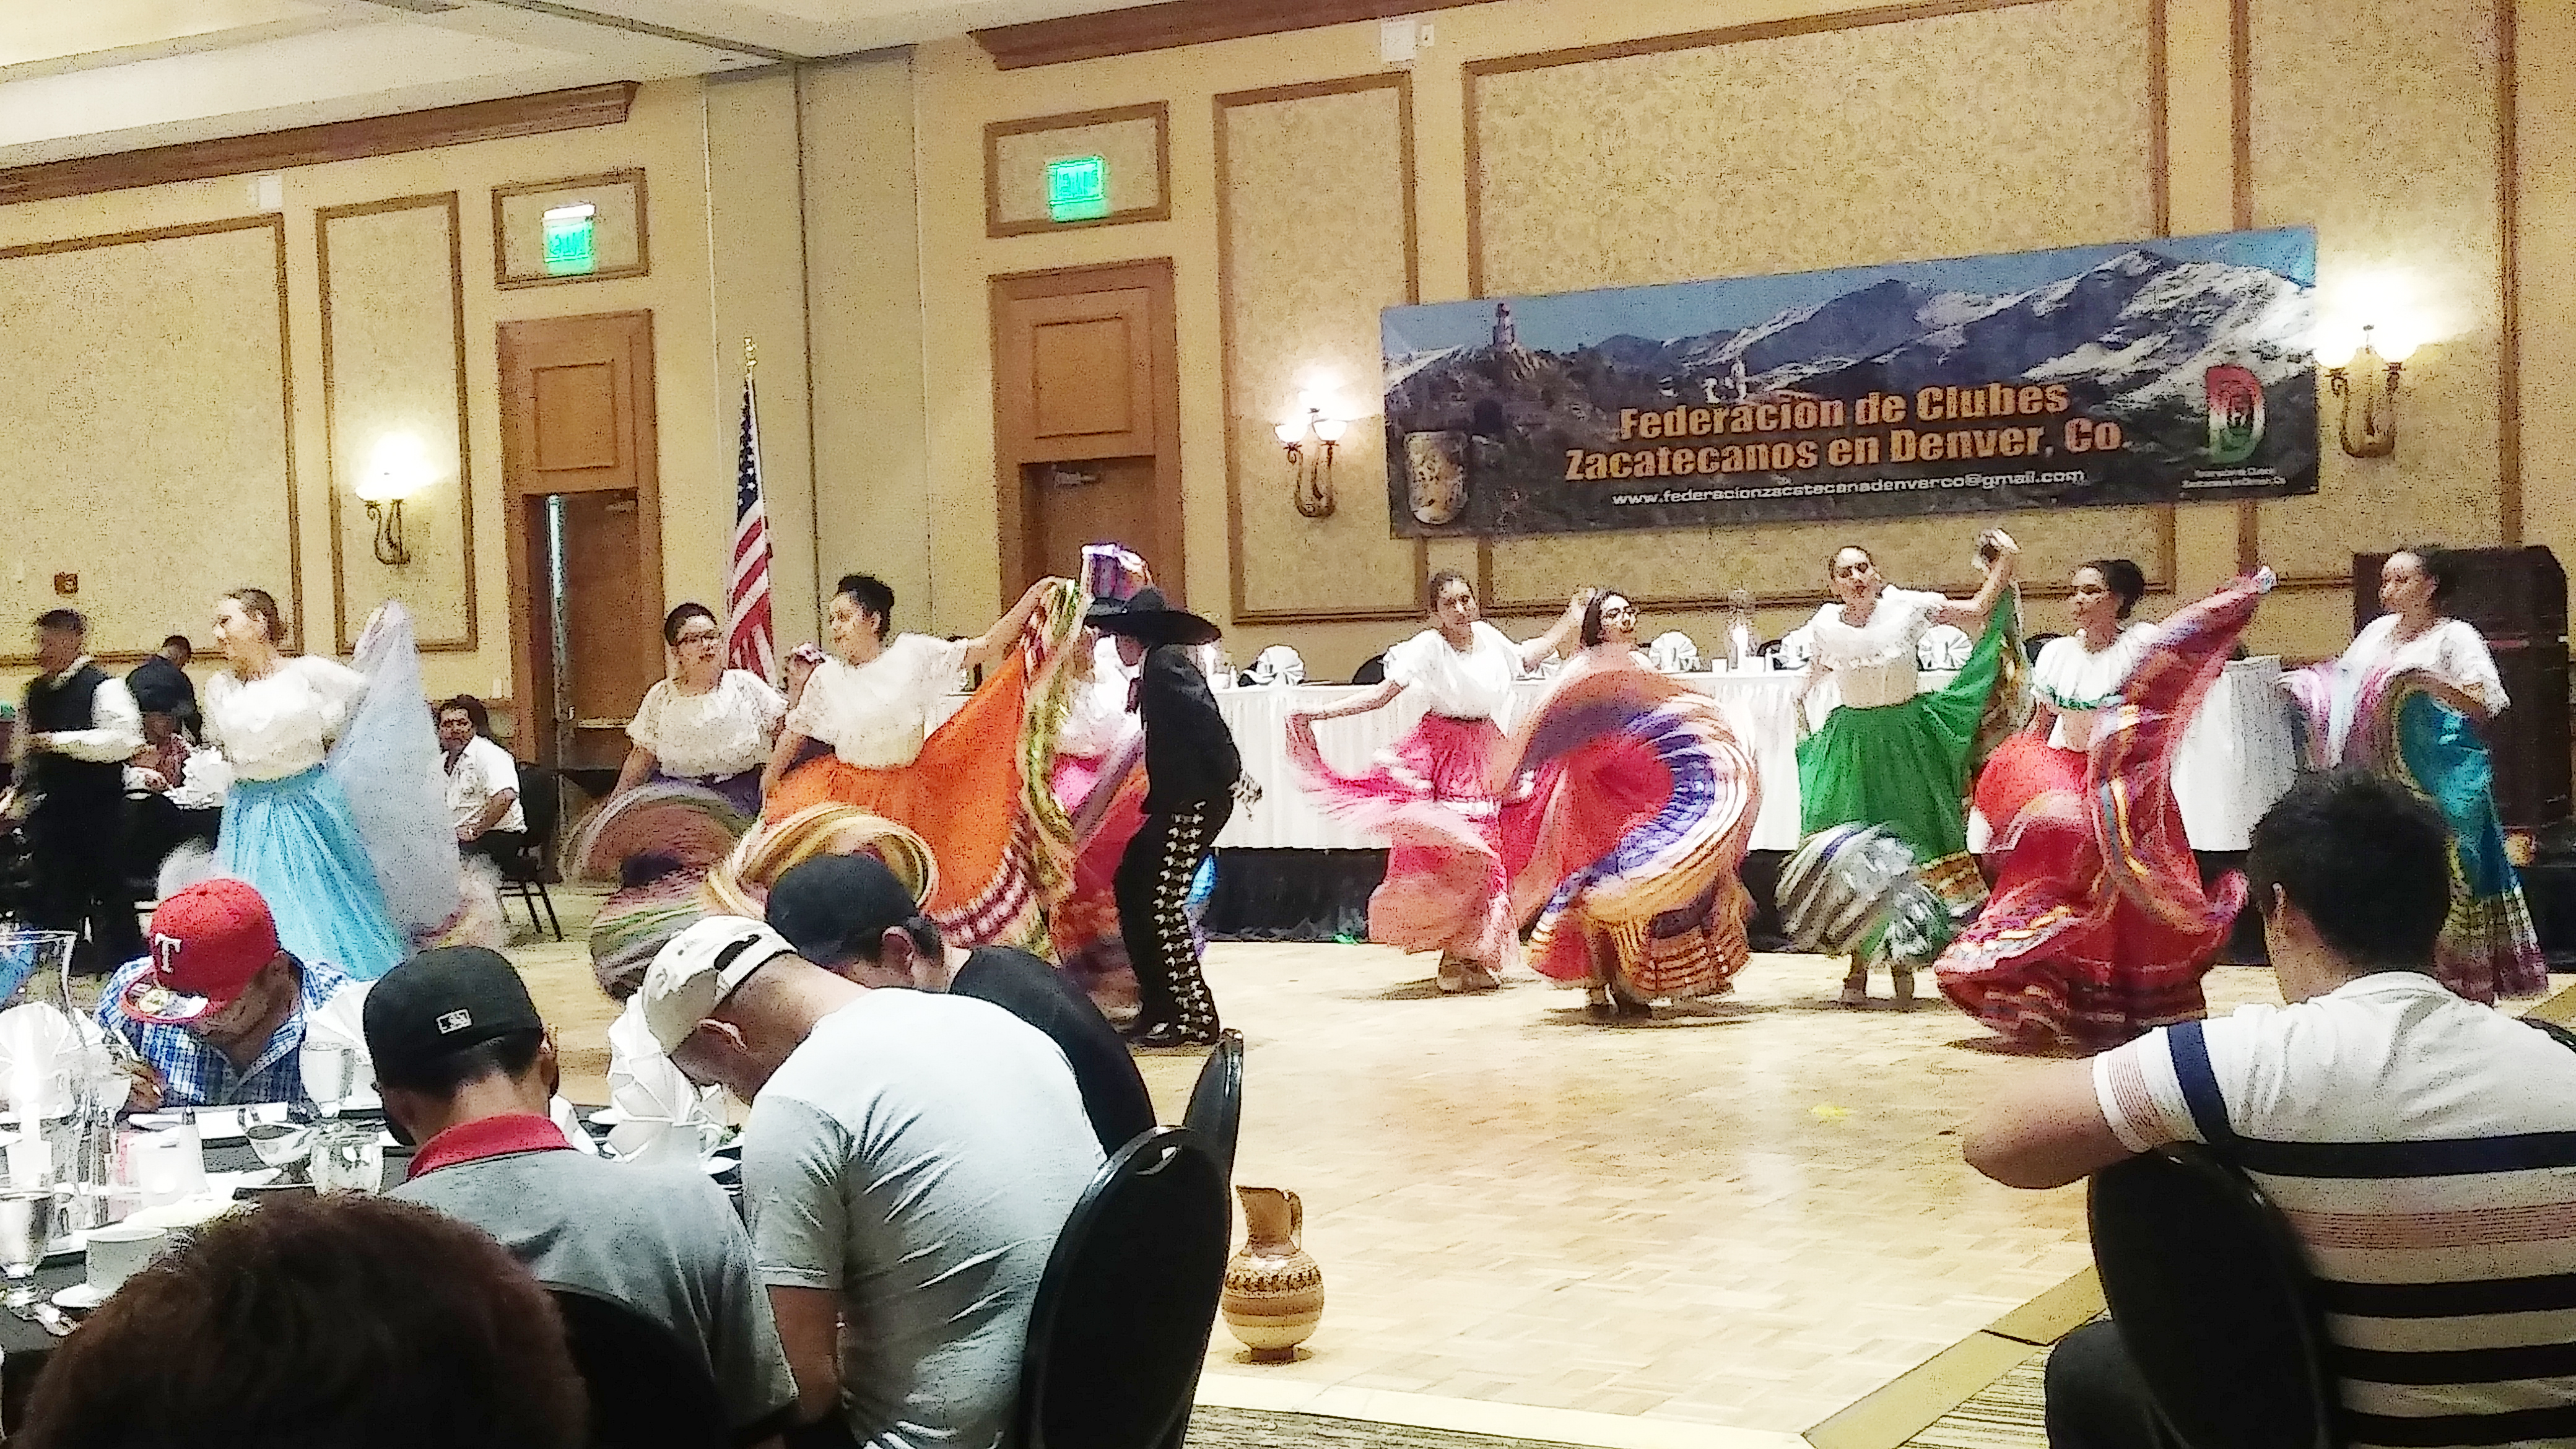 Federación de Clubes Zacatecanos en Denver y su celebración anual